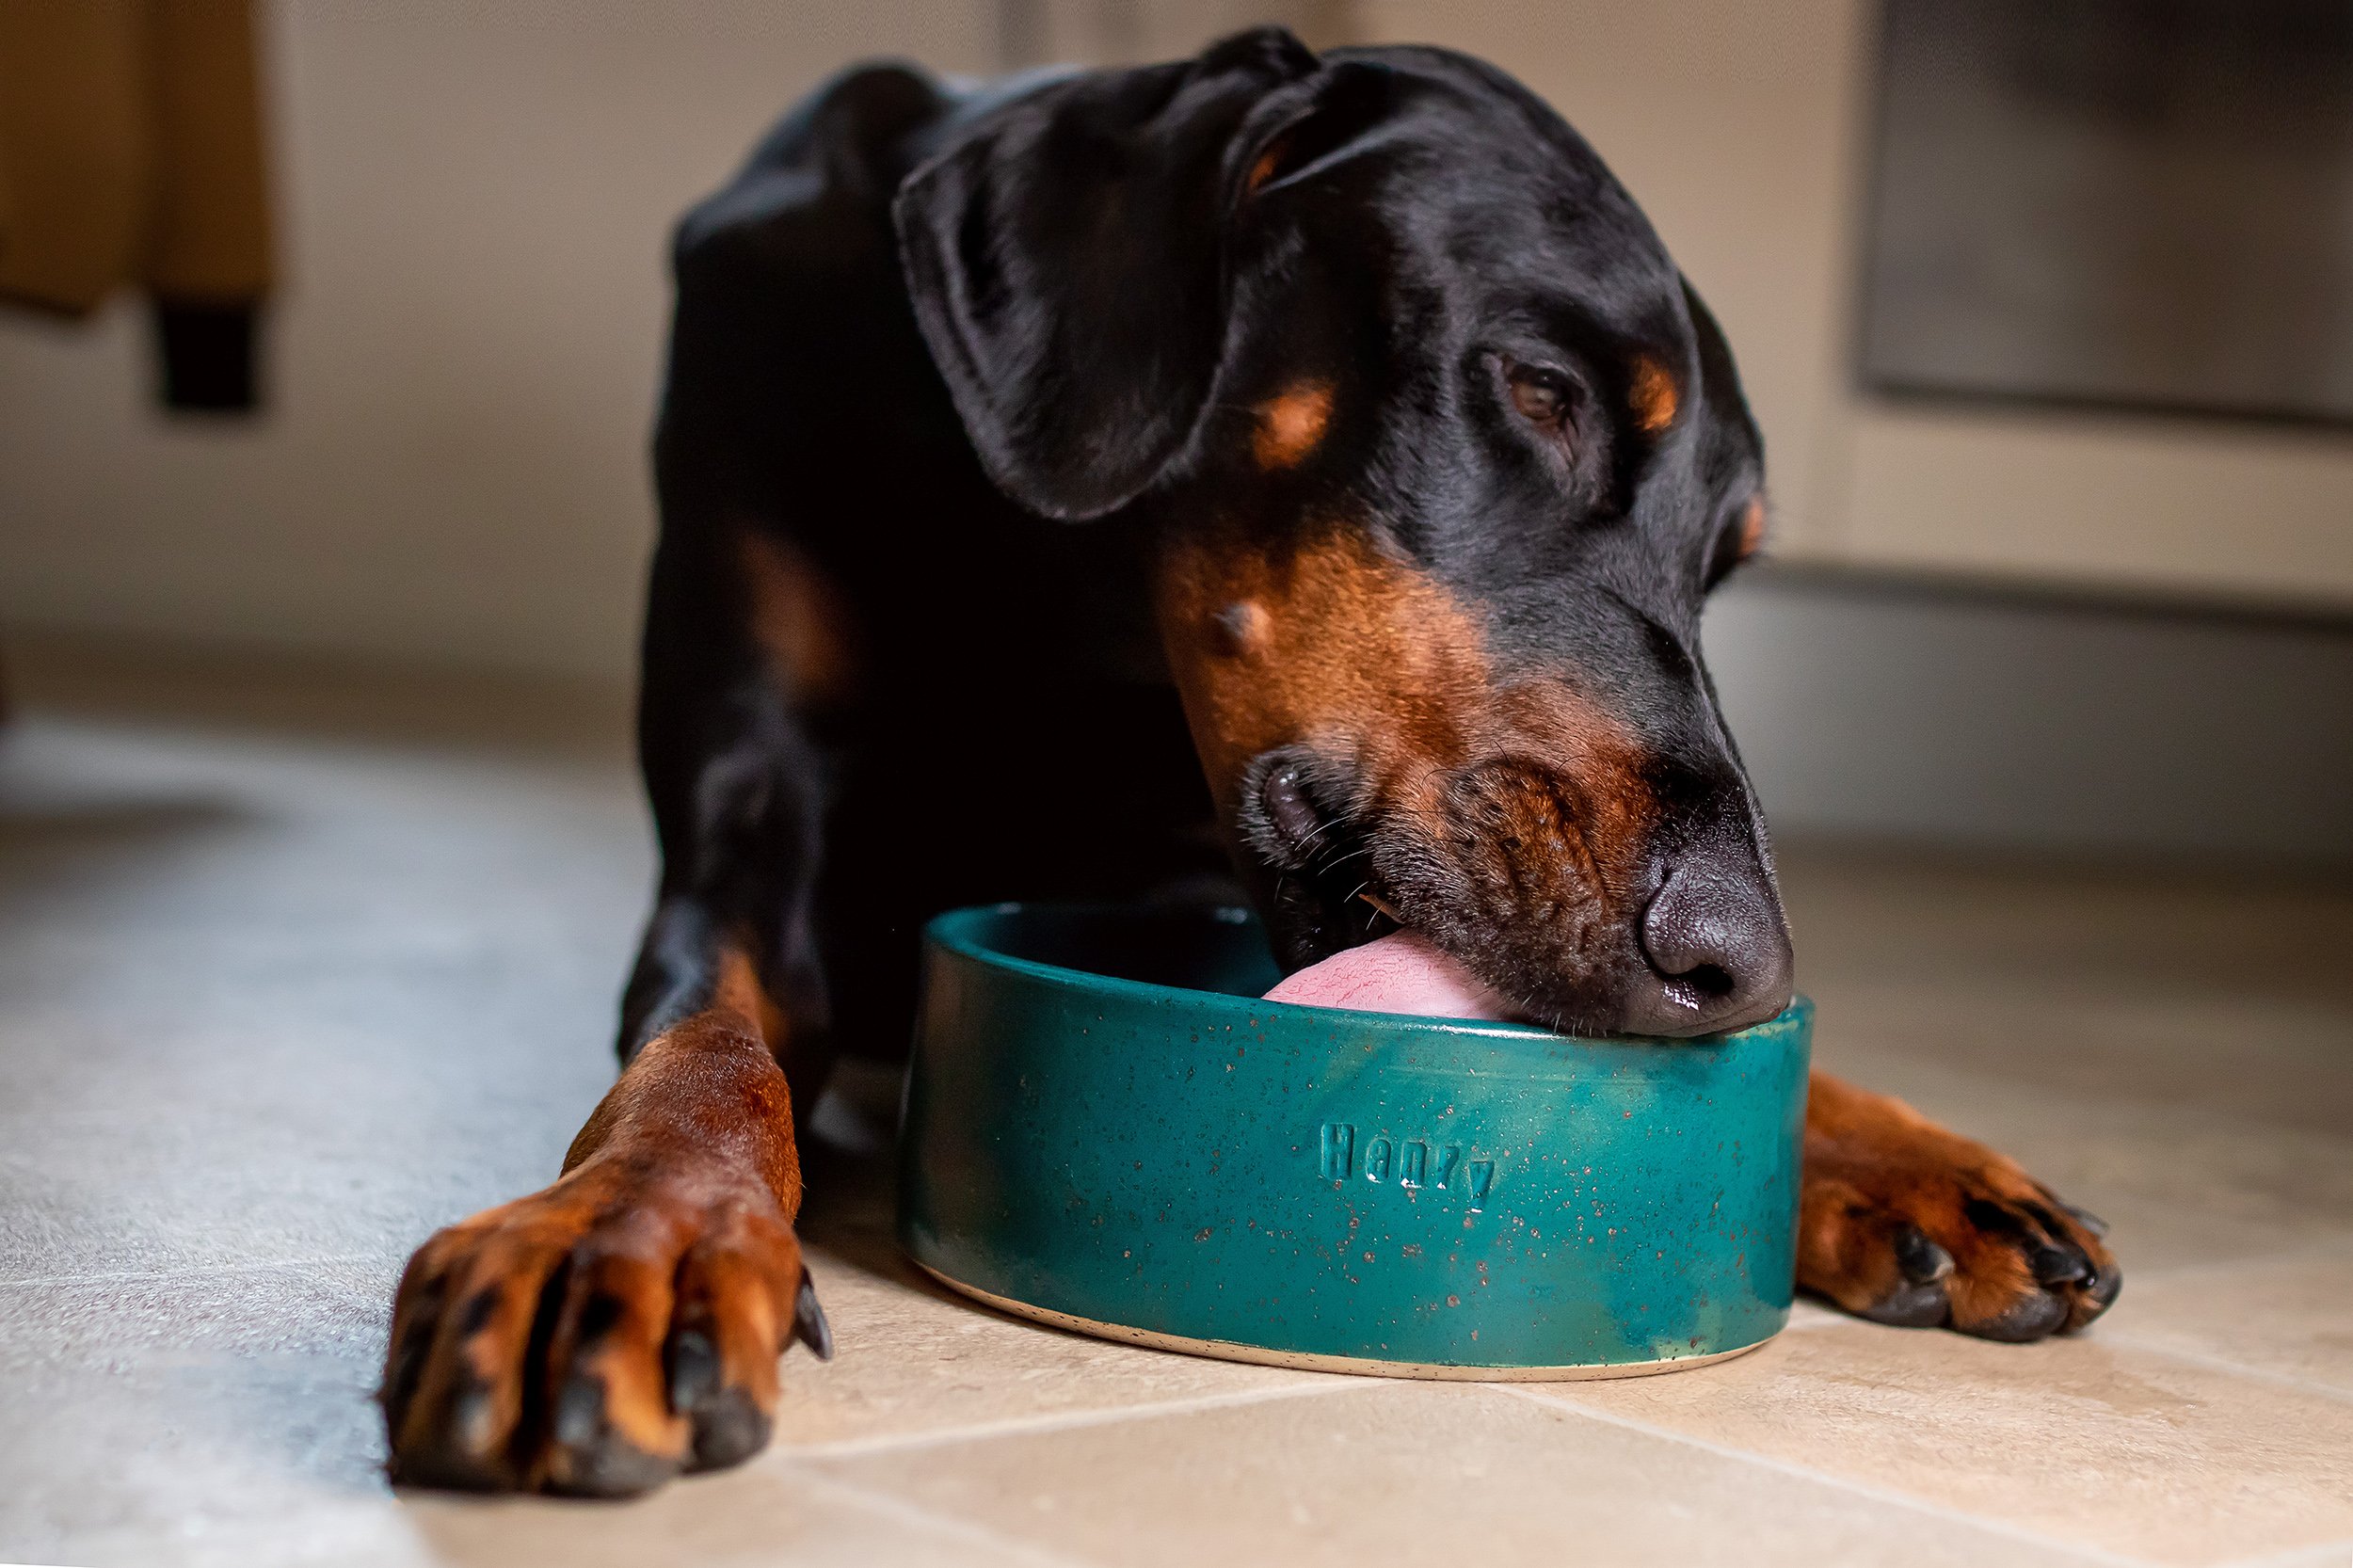 Woran erkennst du das passende Futter für deinen Hund?